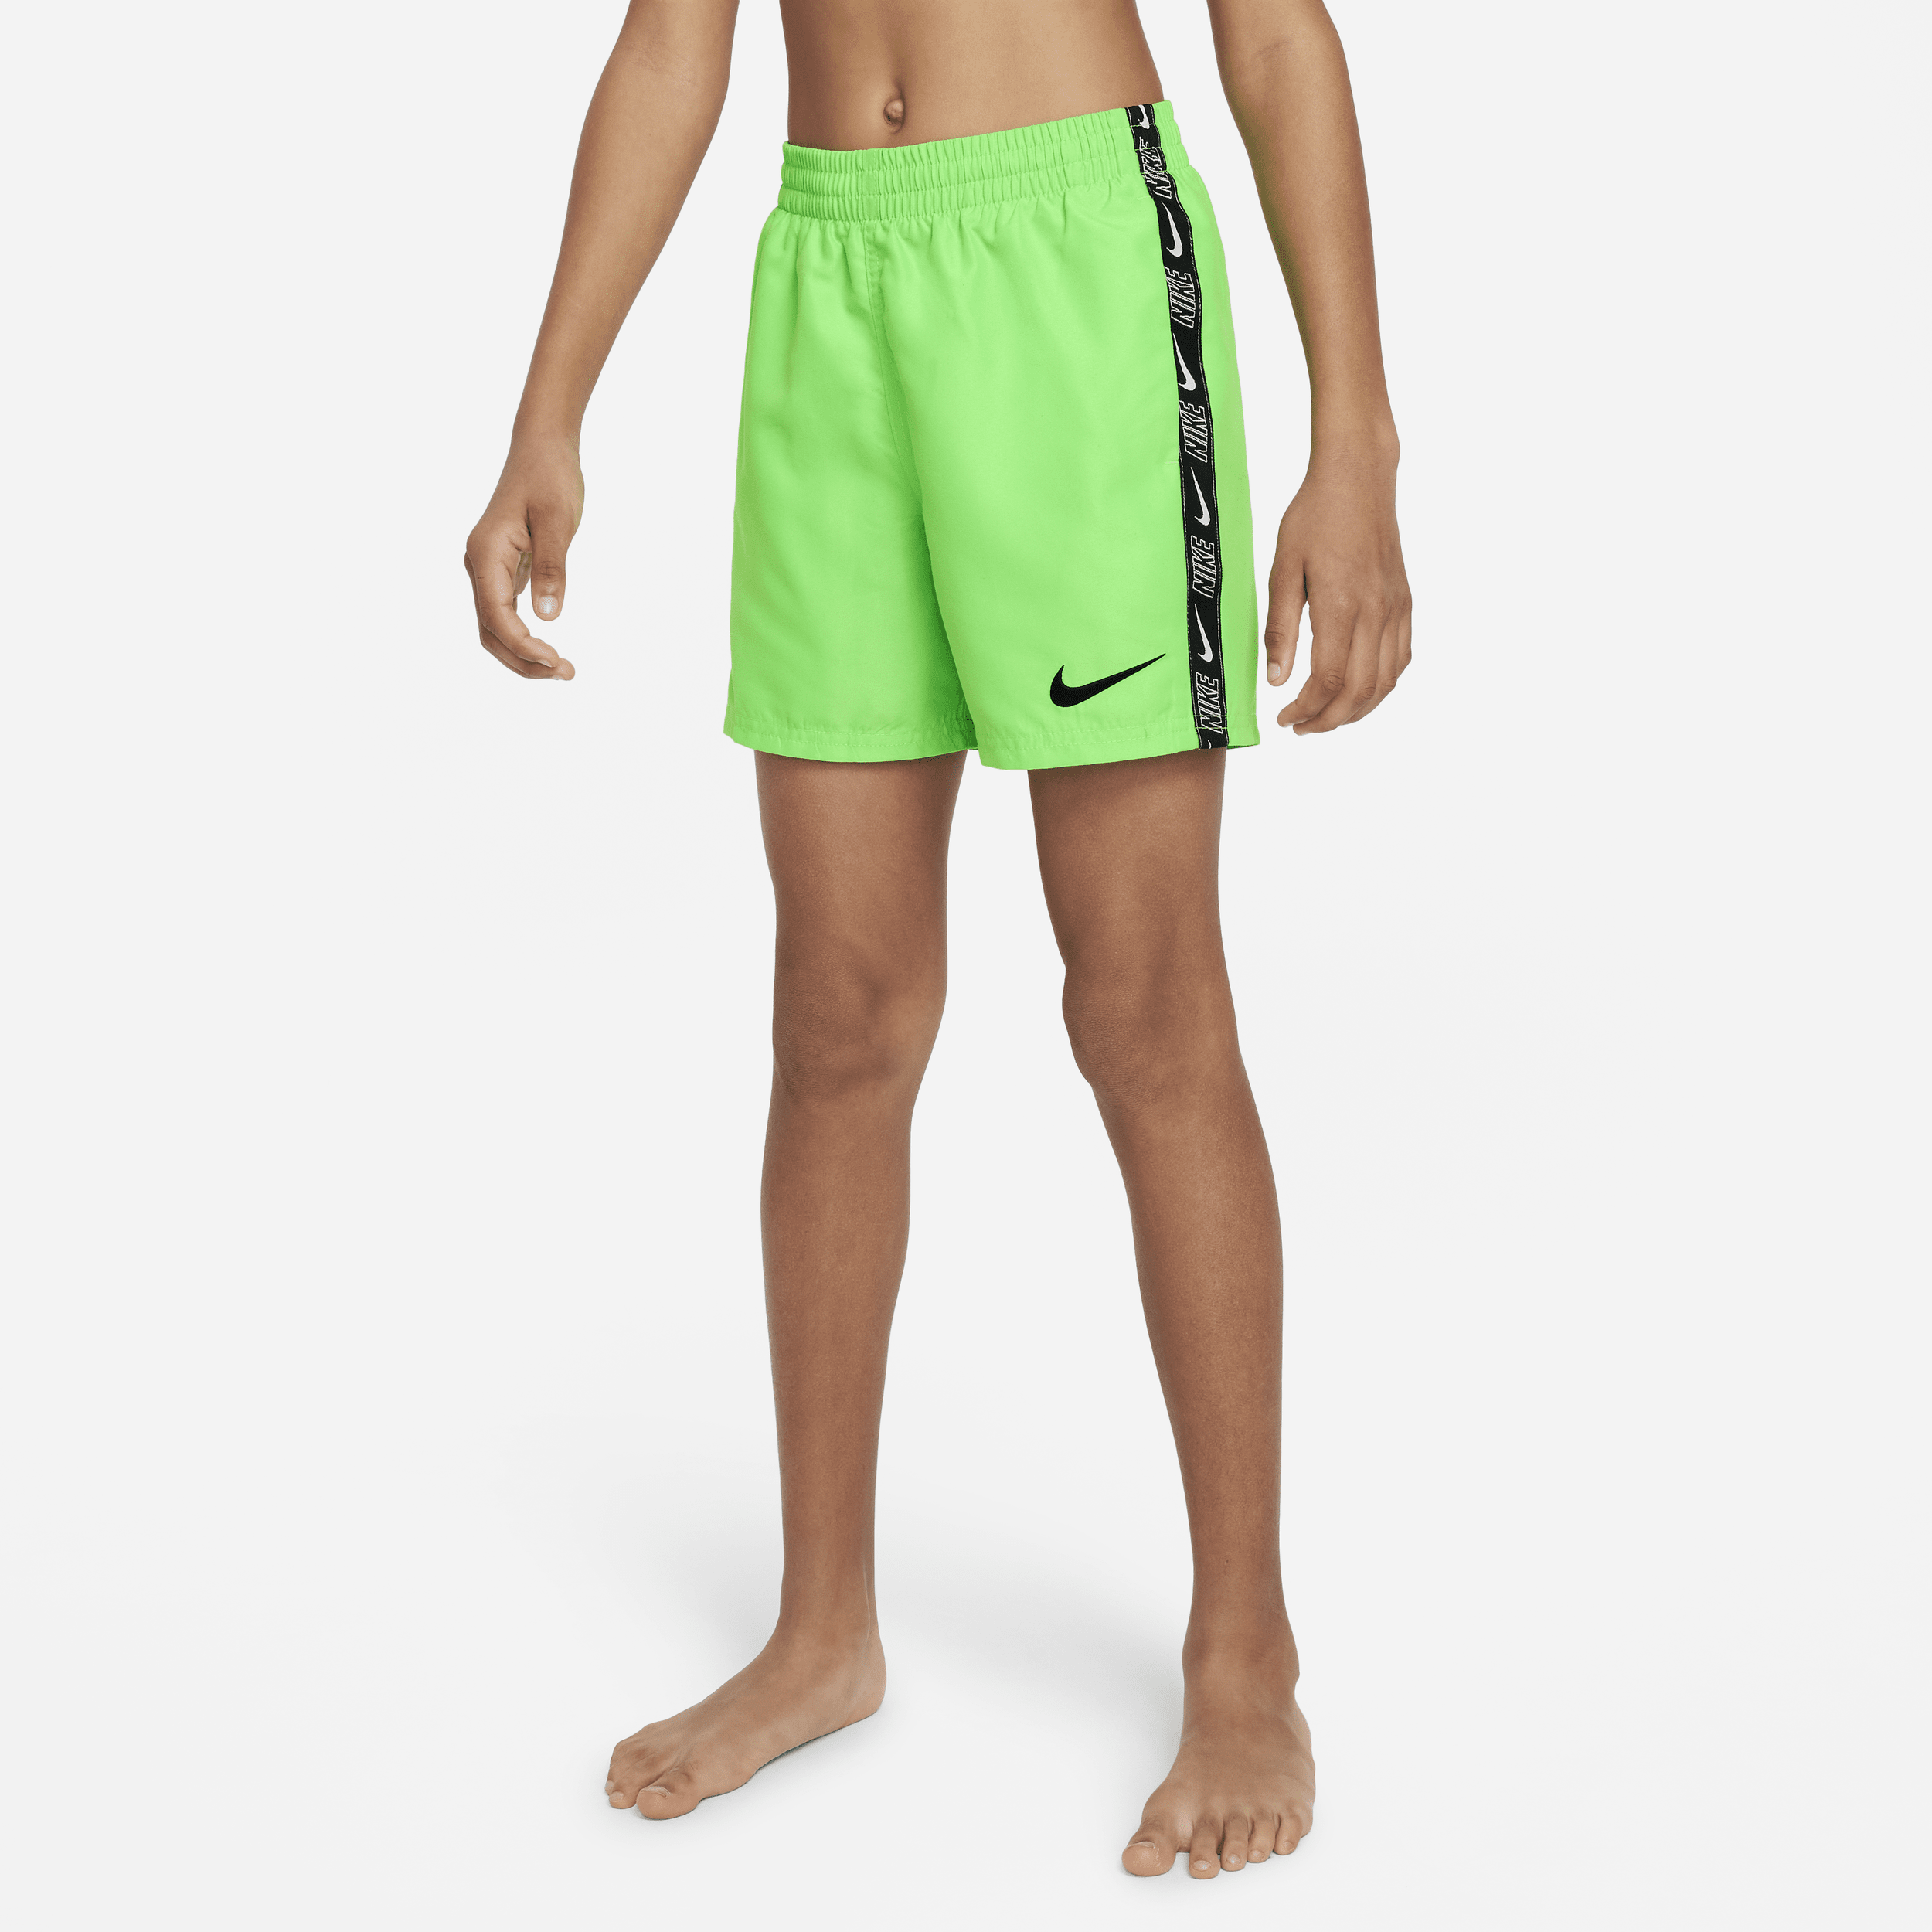 Nike-Volley-badeshorts (10 cm) til større børn (drenge) - grøn